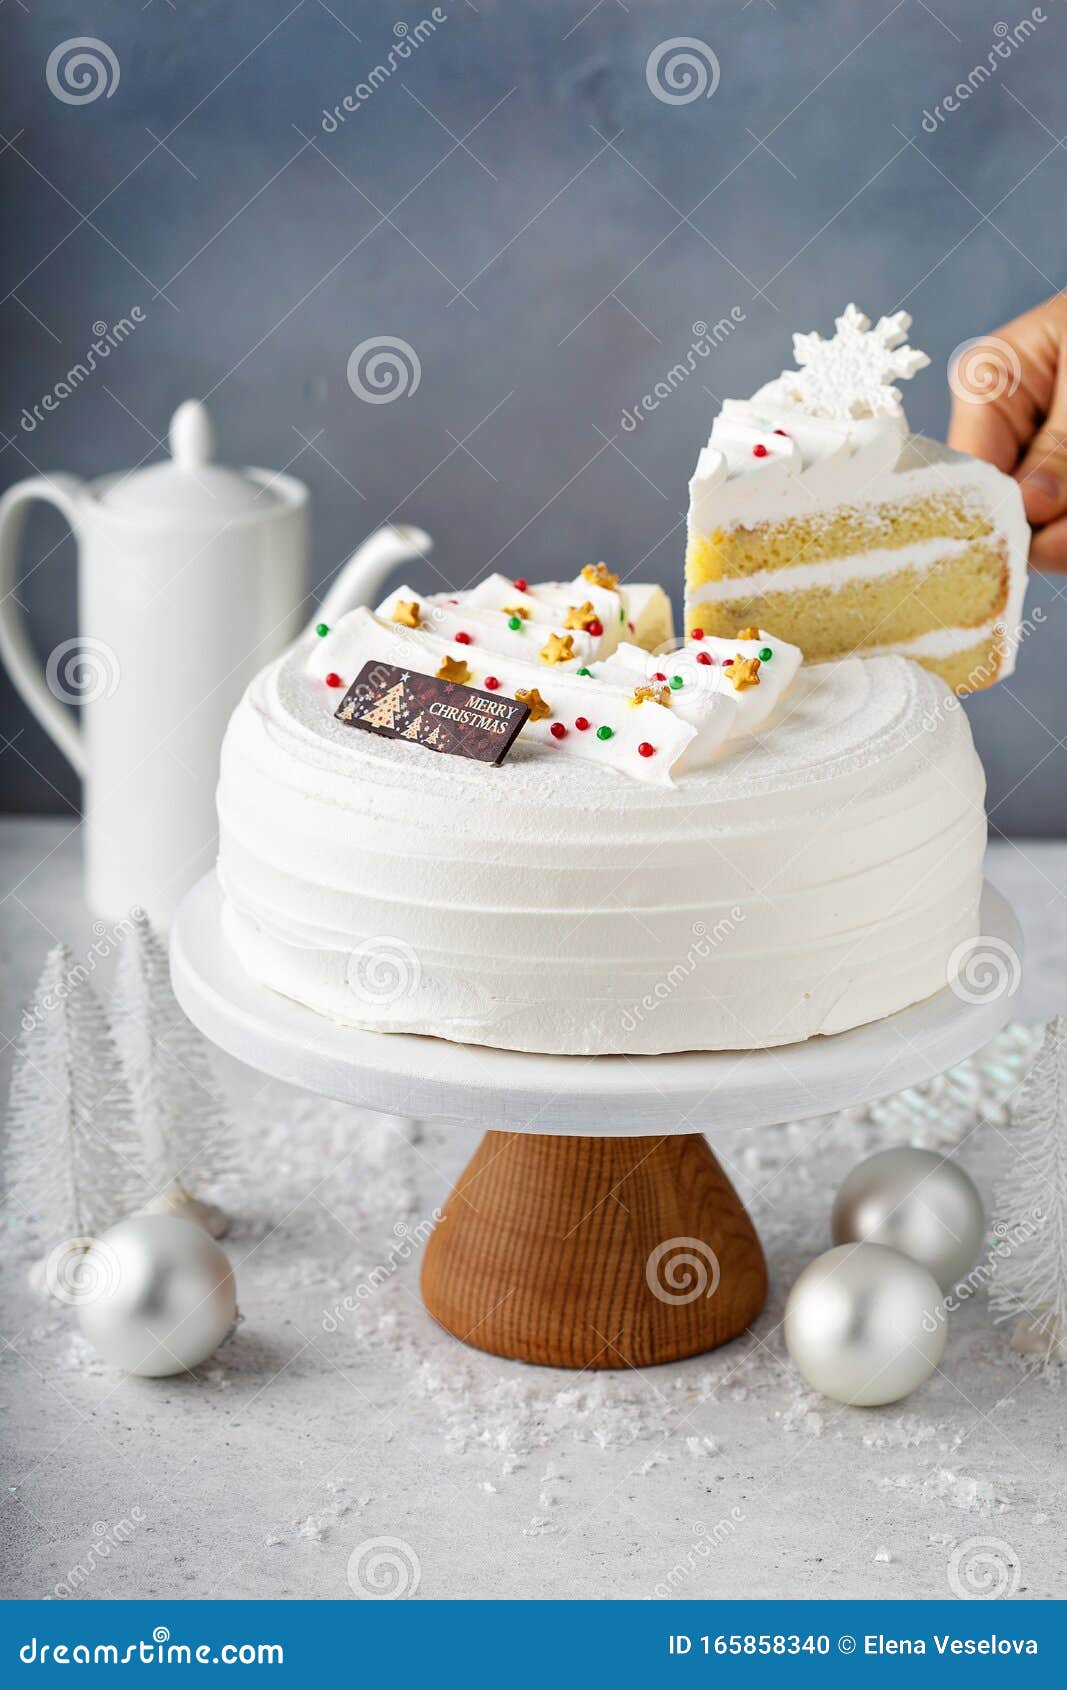 White Christmas cake stock photo. Image of celebration - 165858340